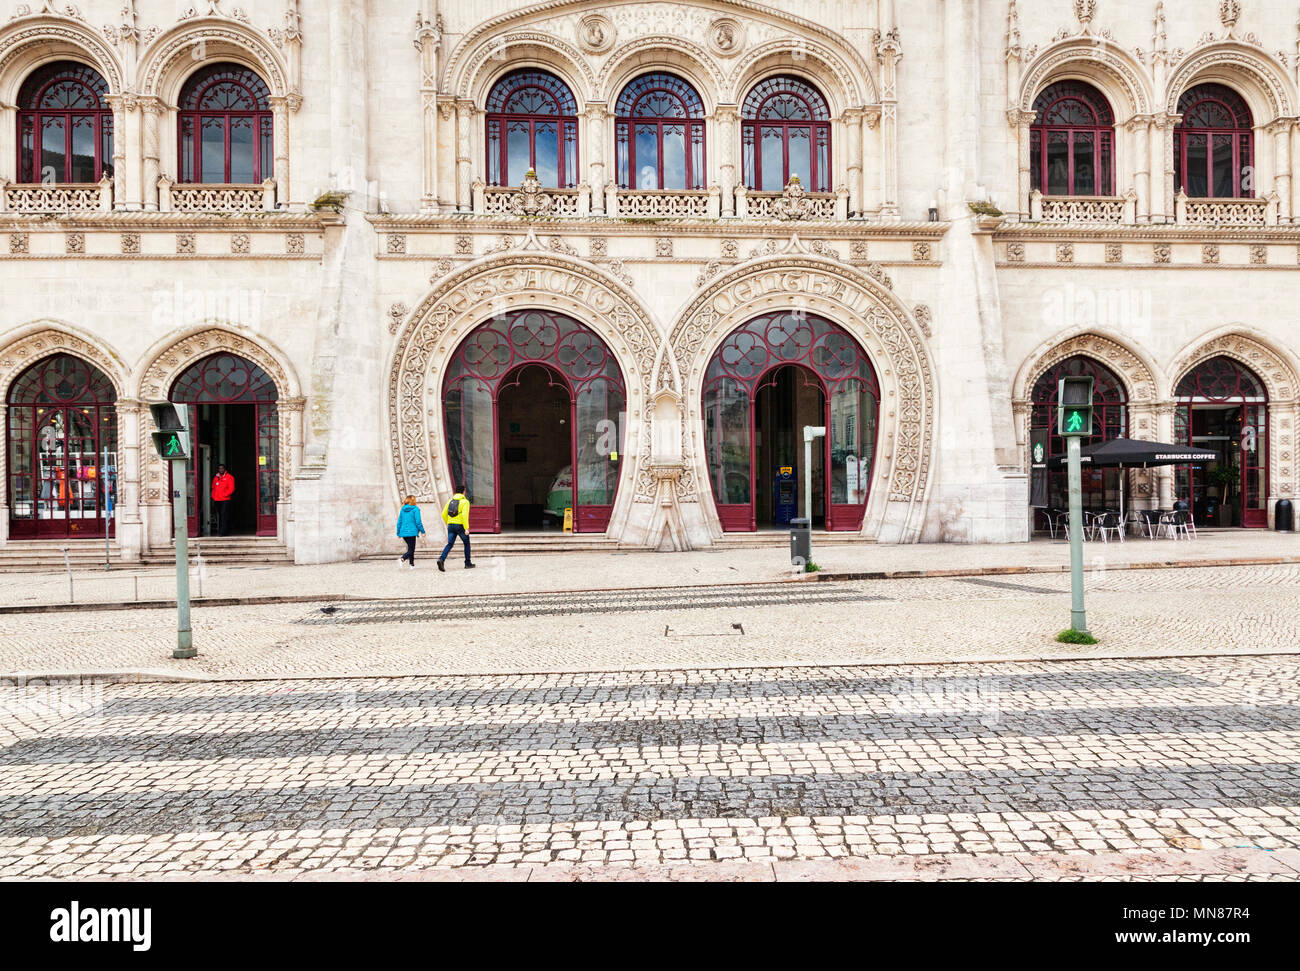 Vom 3. März 2018: Lissabon, Portugal - die gewölbte Fassade der Bahnhof Rossio, ein Paar ihren Weg zum Eingang. Im Vordergrund ein Pelikan c Stockfoto